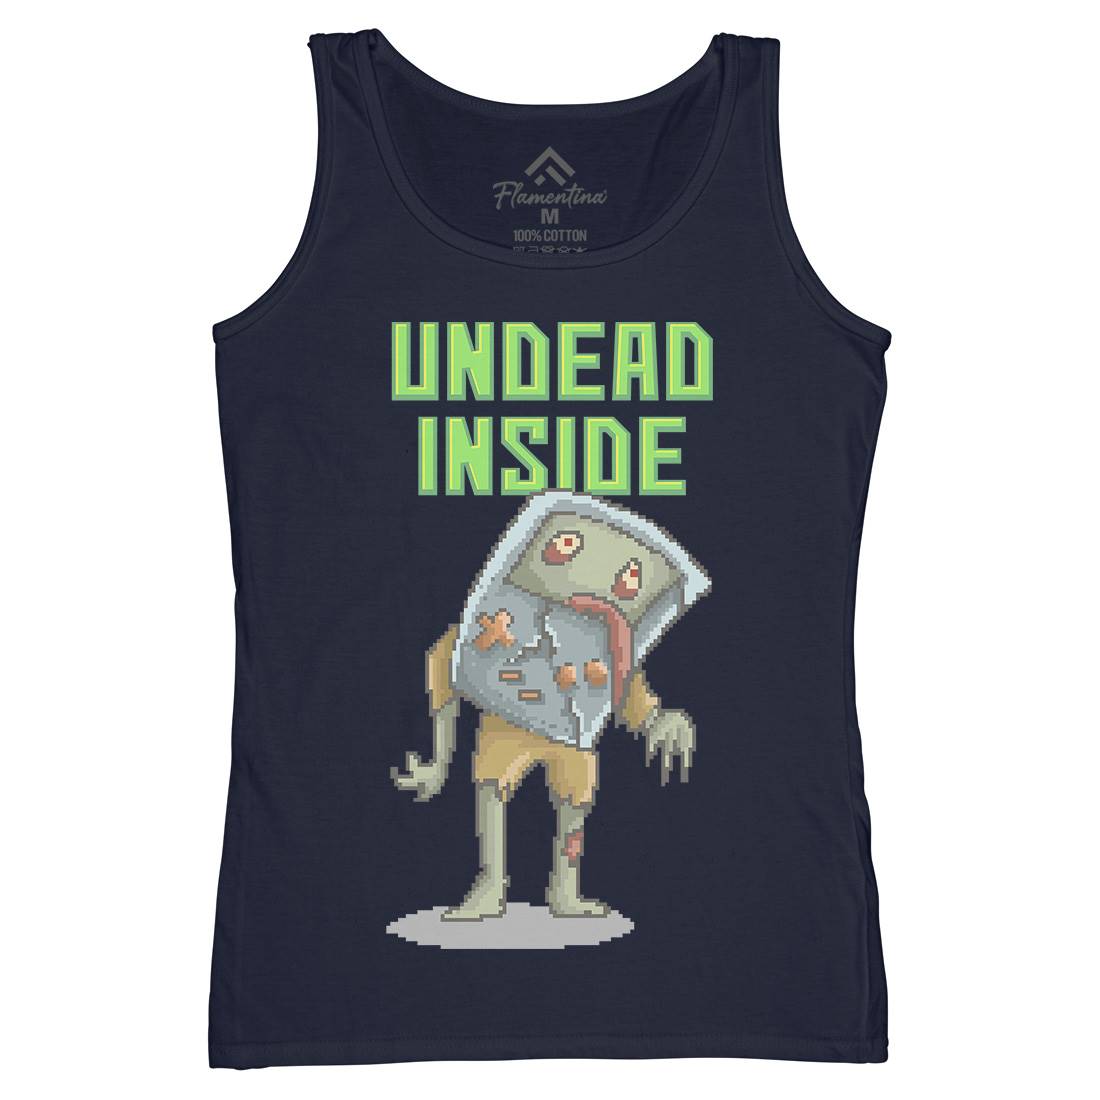 Undead Inside Womens Organic Tank Top Vest Geek B973